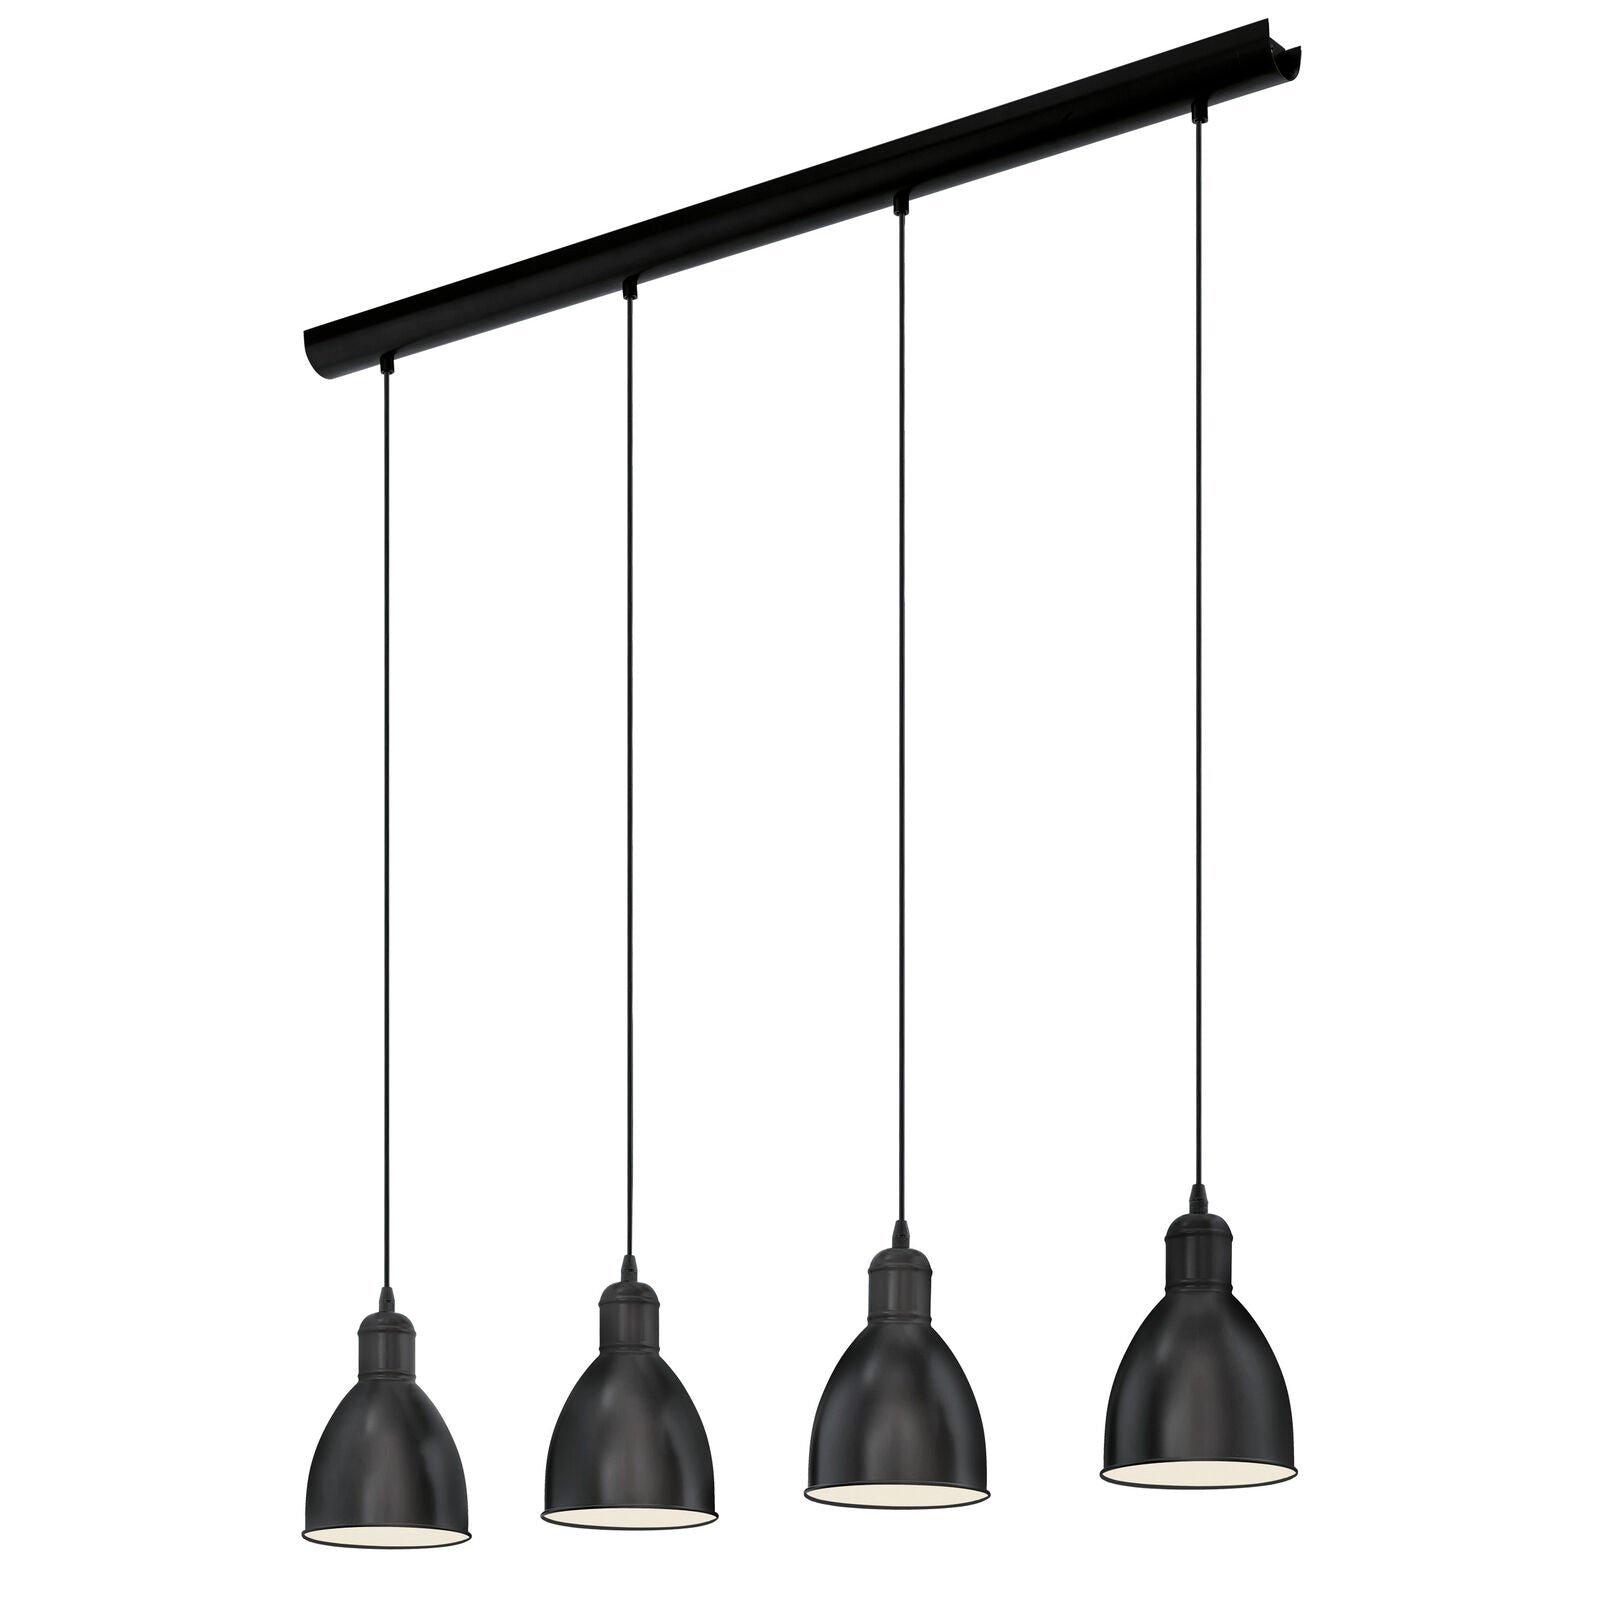 Hanging Ceiling Pendant Light Black & White Steel 4 x 40W E27 Bulb